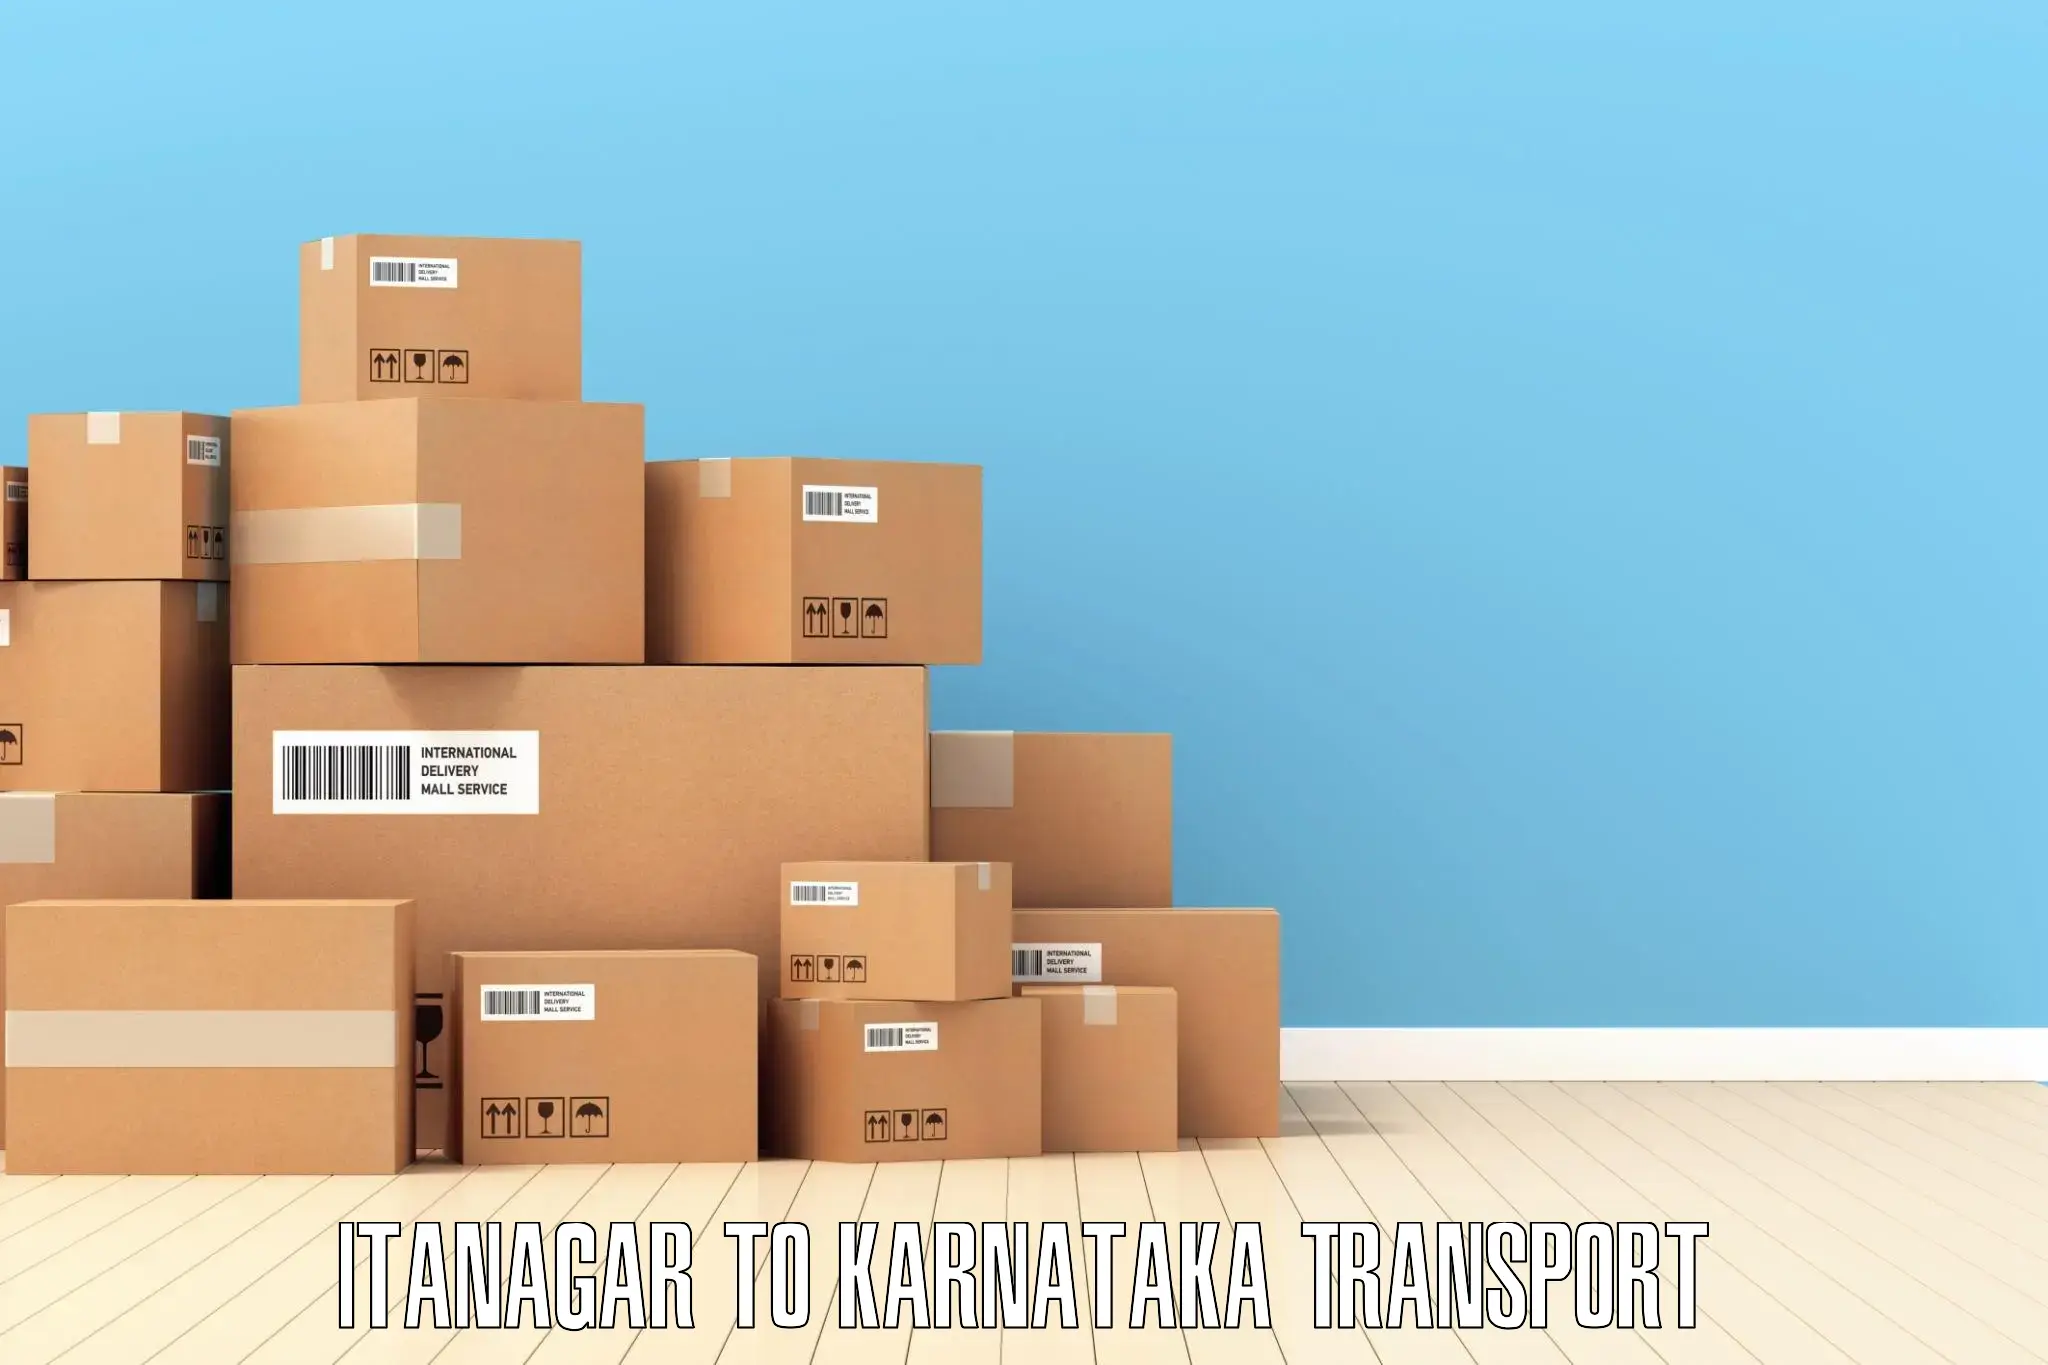 Furniture transport service Itanagar to Khanapur Karnataka